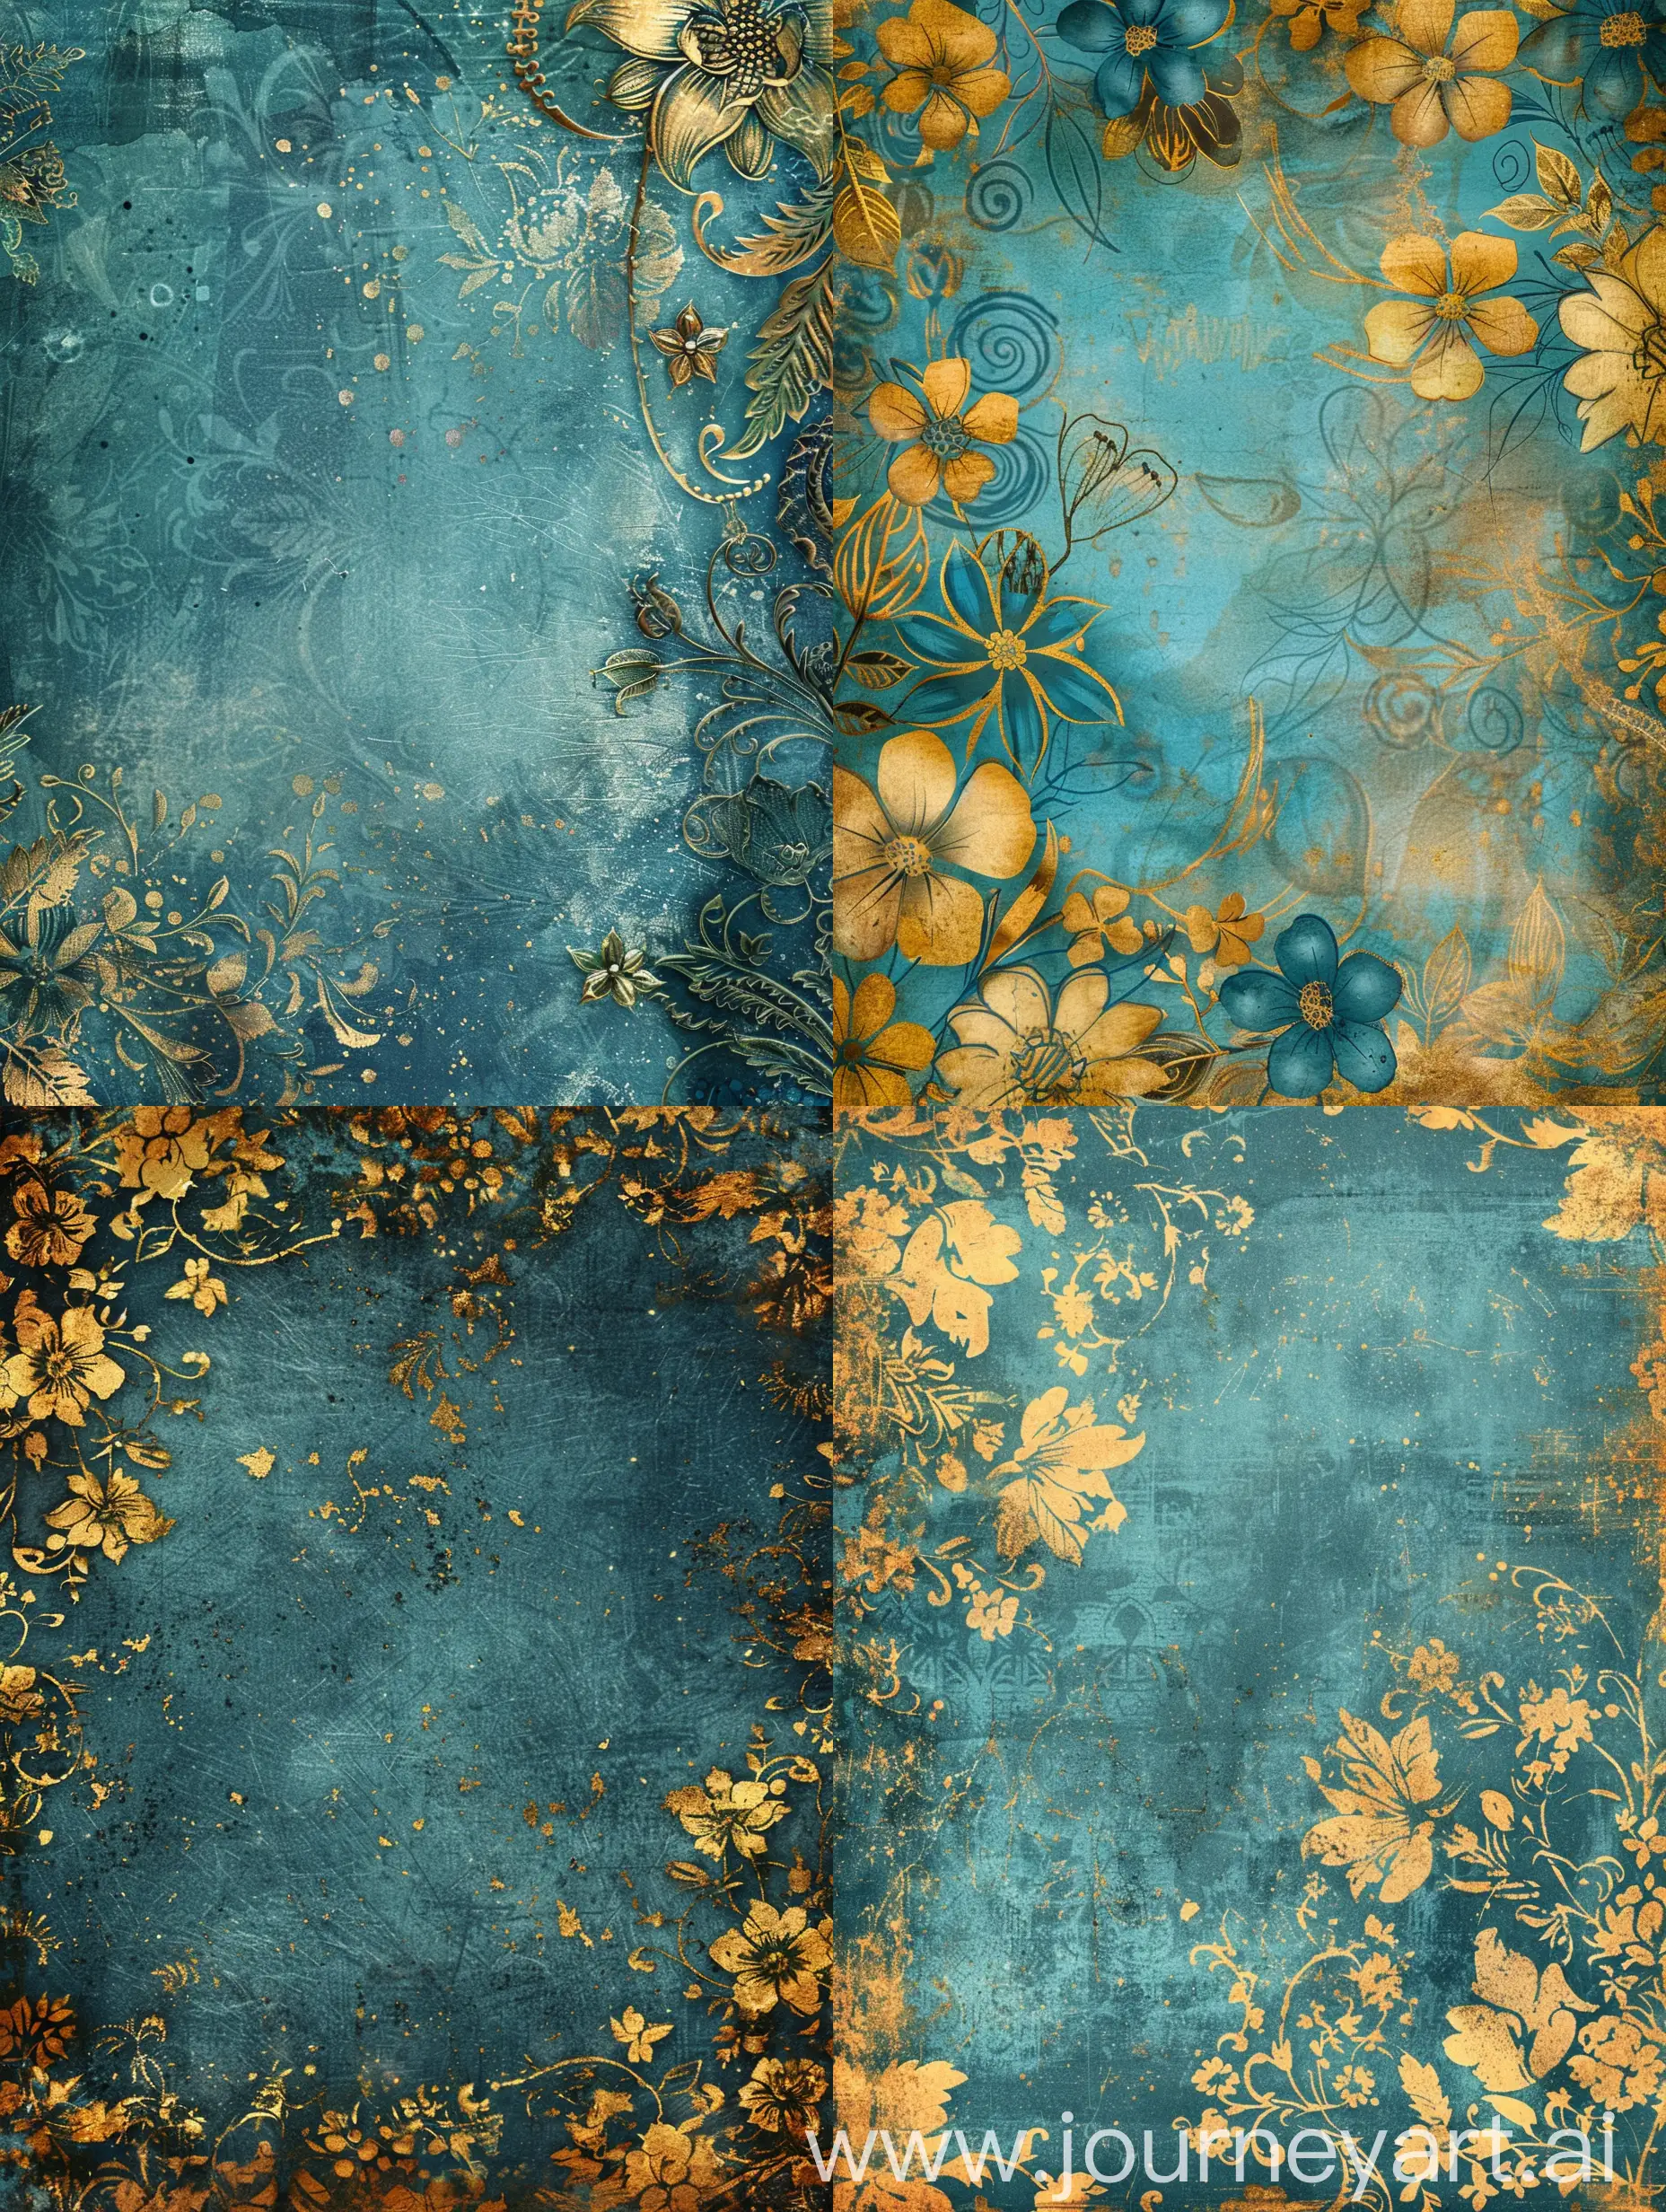 Vintage-Blue-and-Gold-Floral-Fantasy-Digital-Scrapbook-Paper